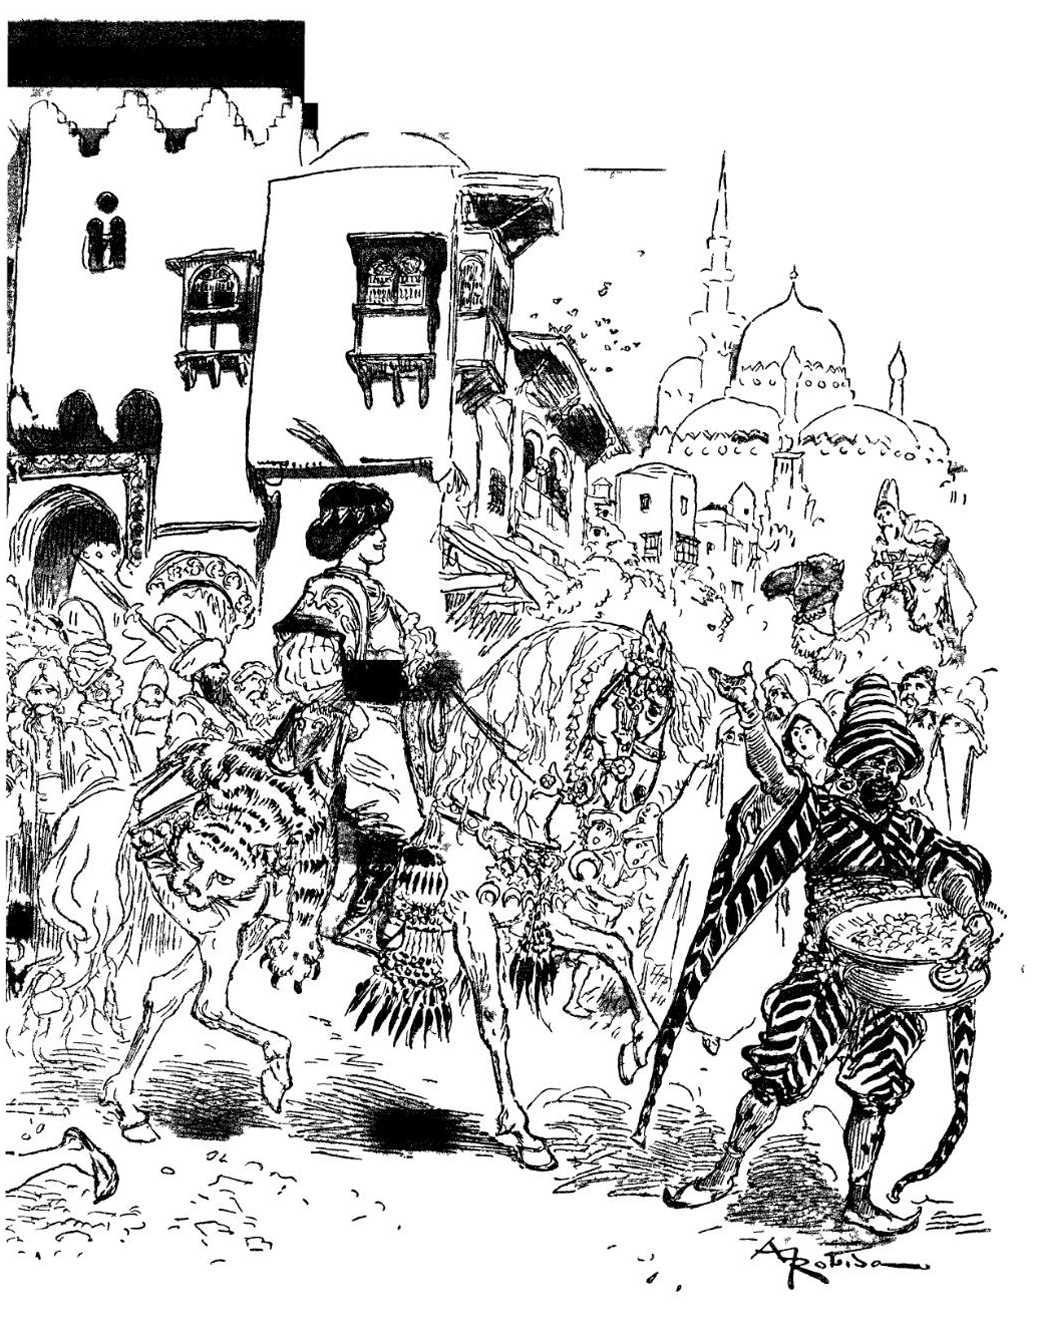 A chegada do príncipe Aladin à cidade de Agrabah